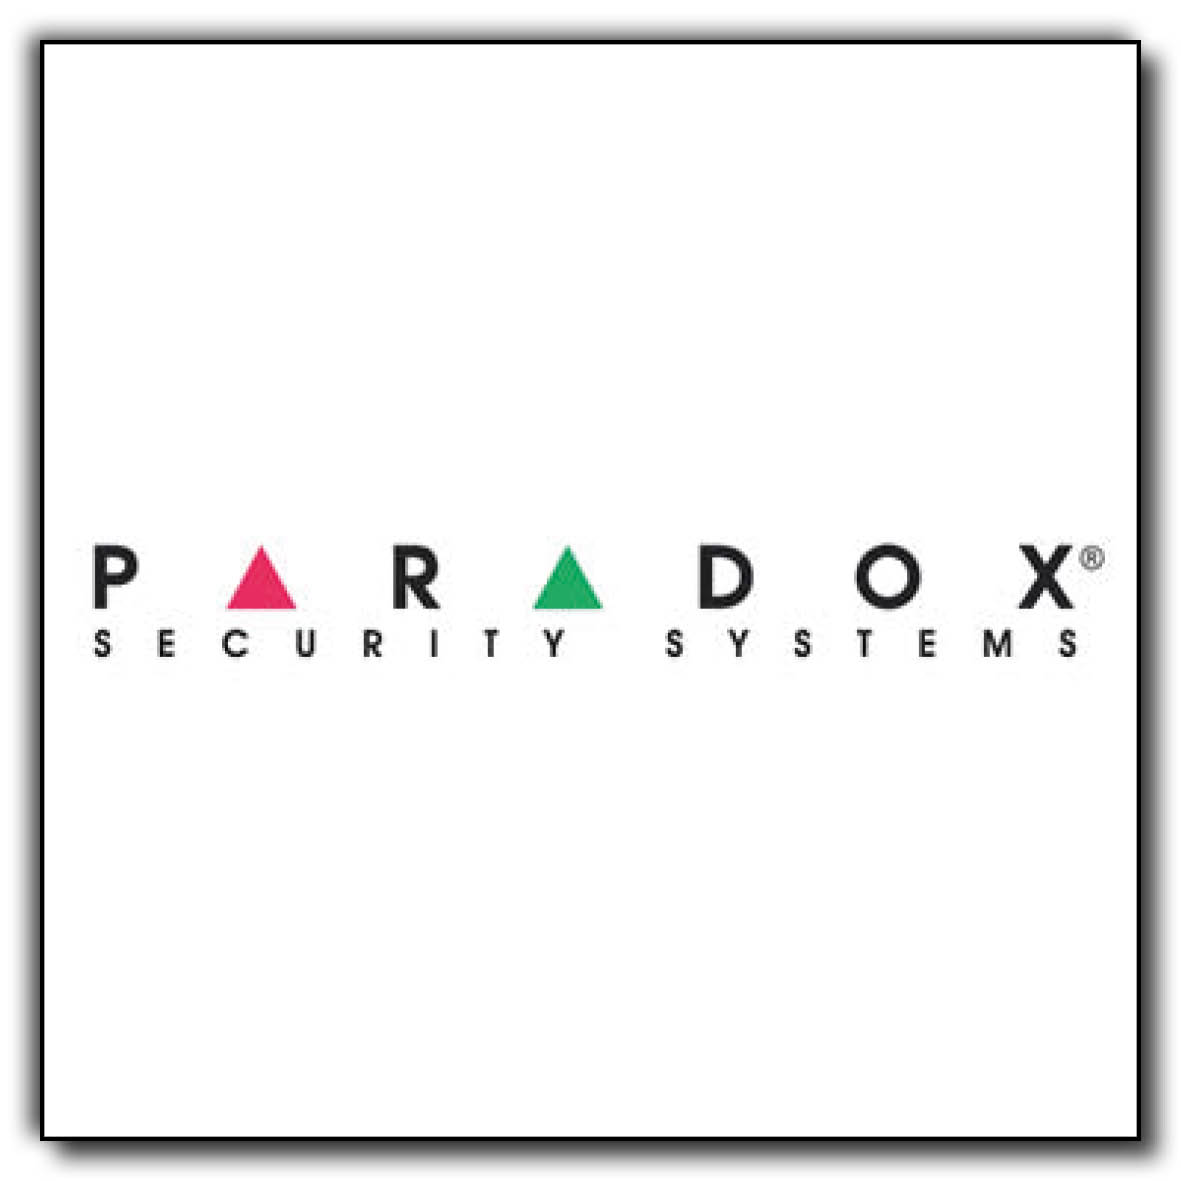 Paradox